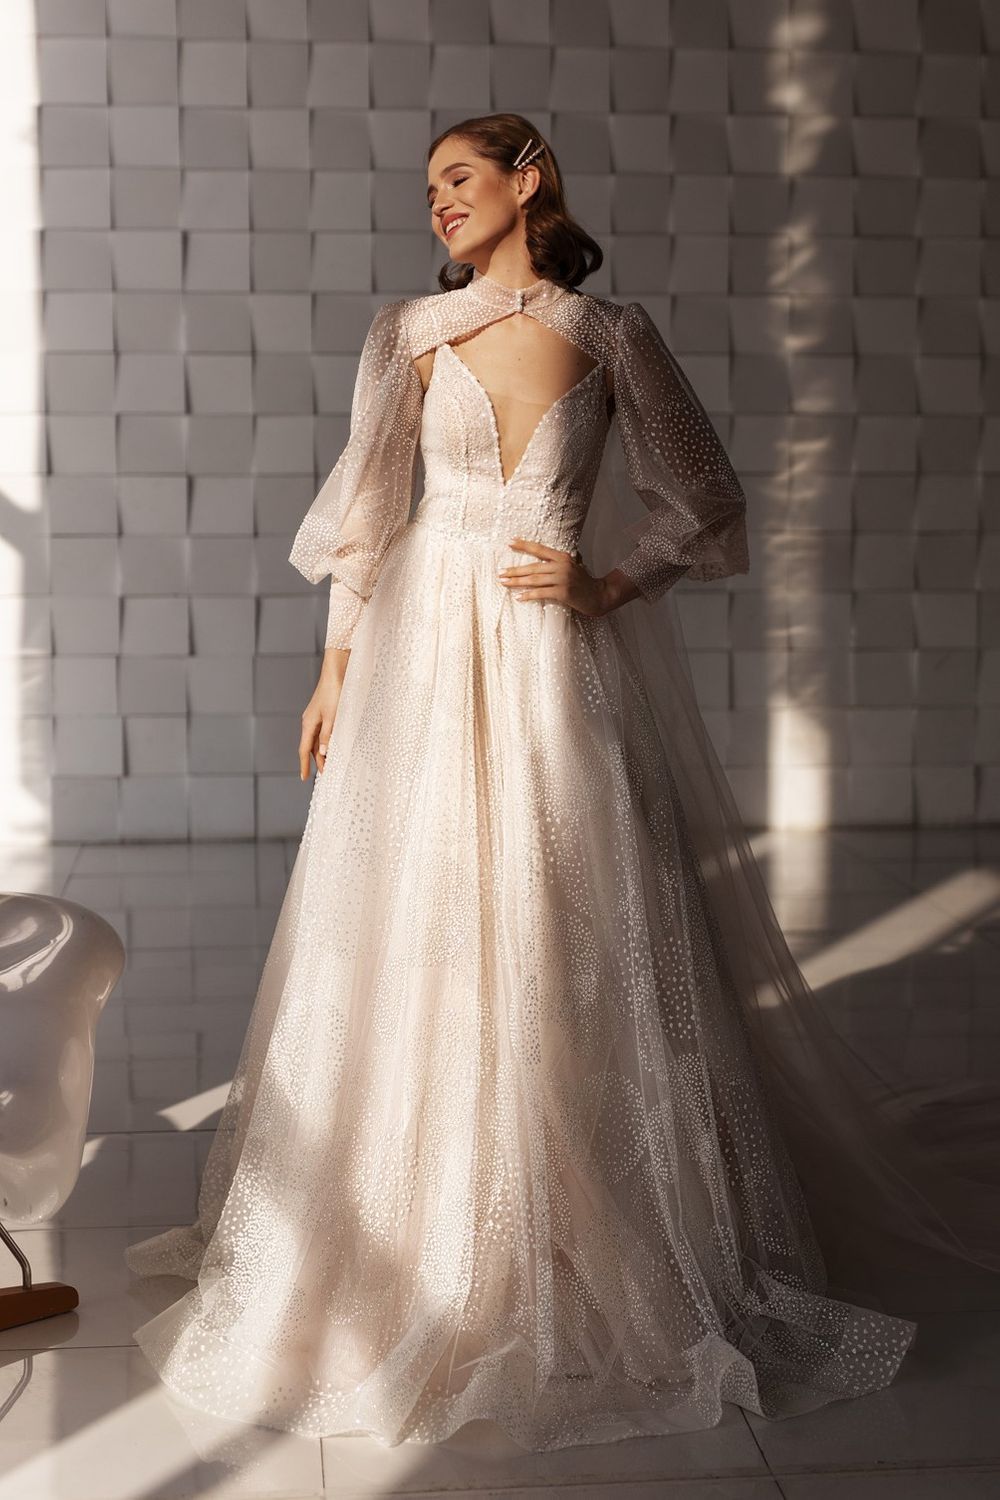 Свадебное платье Каприз